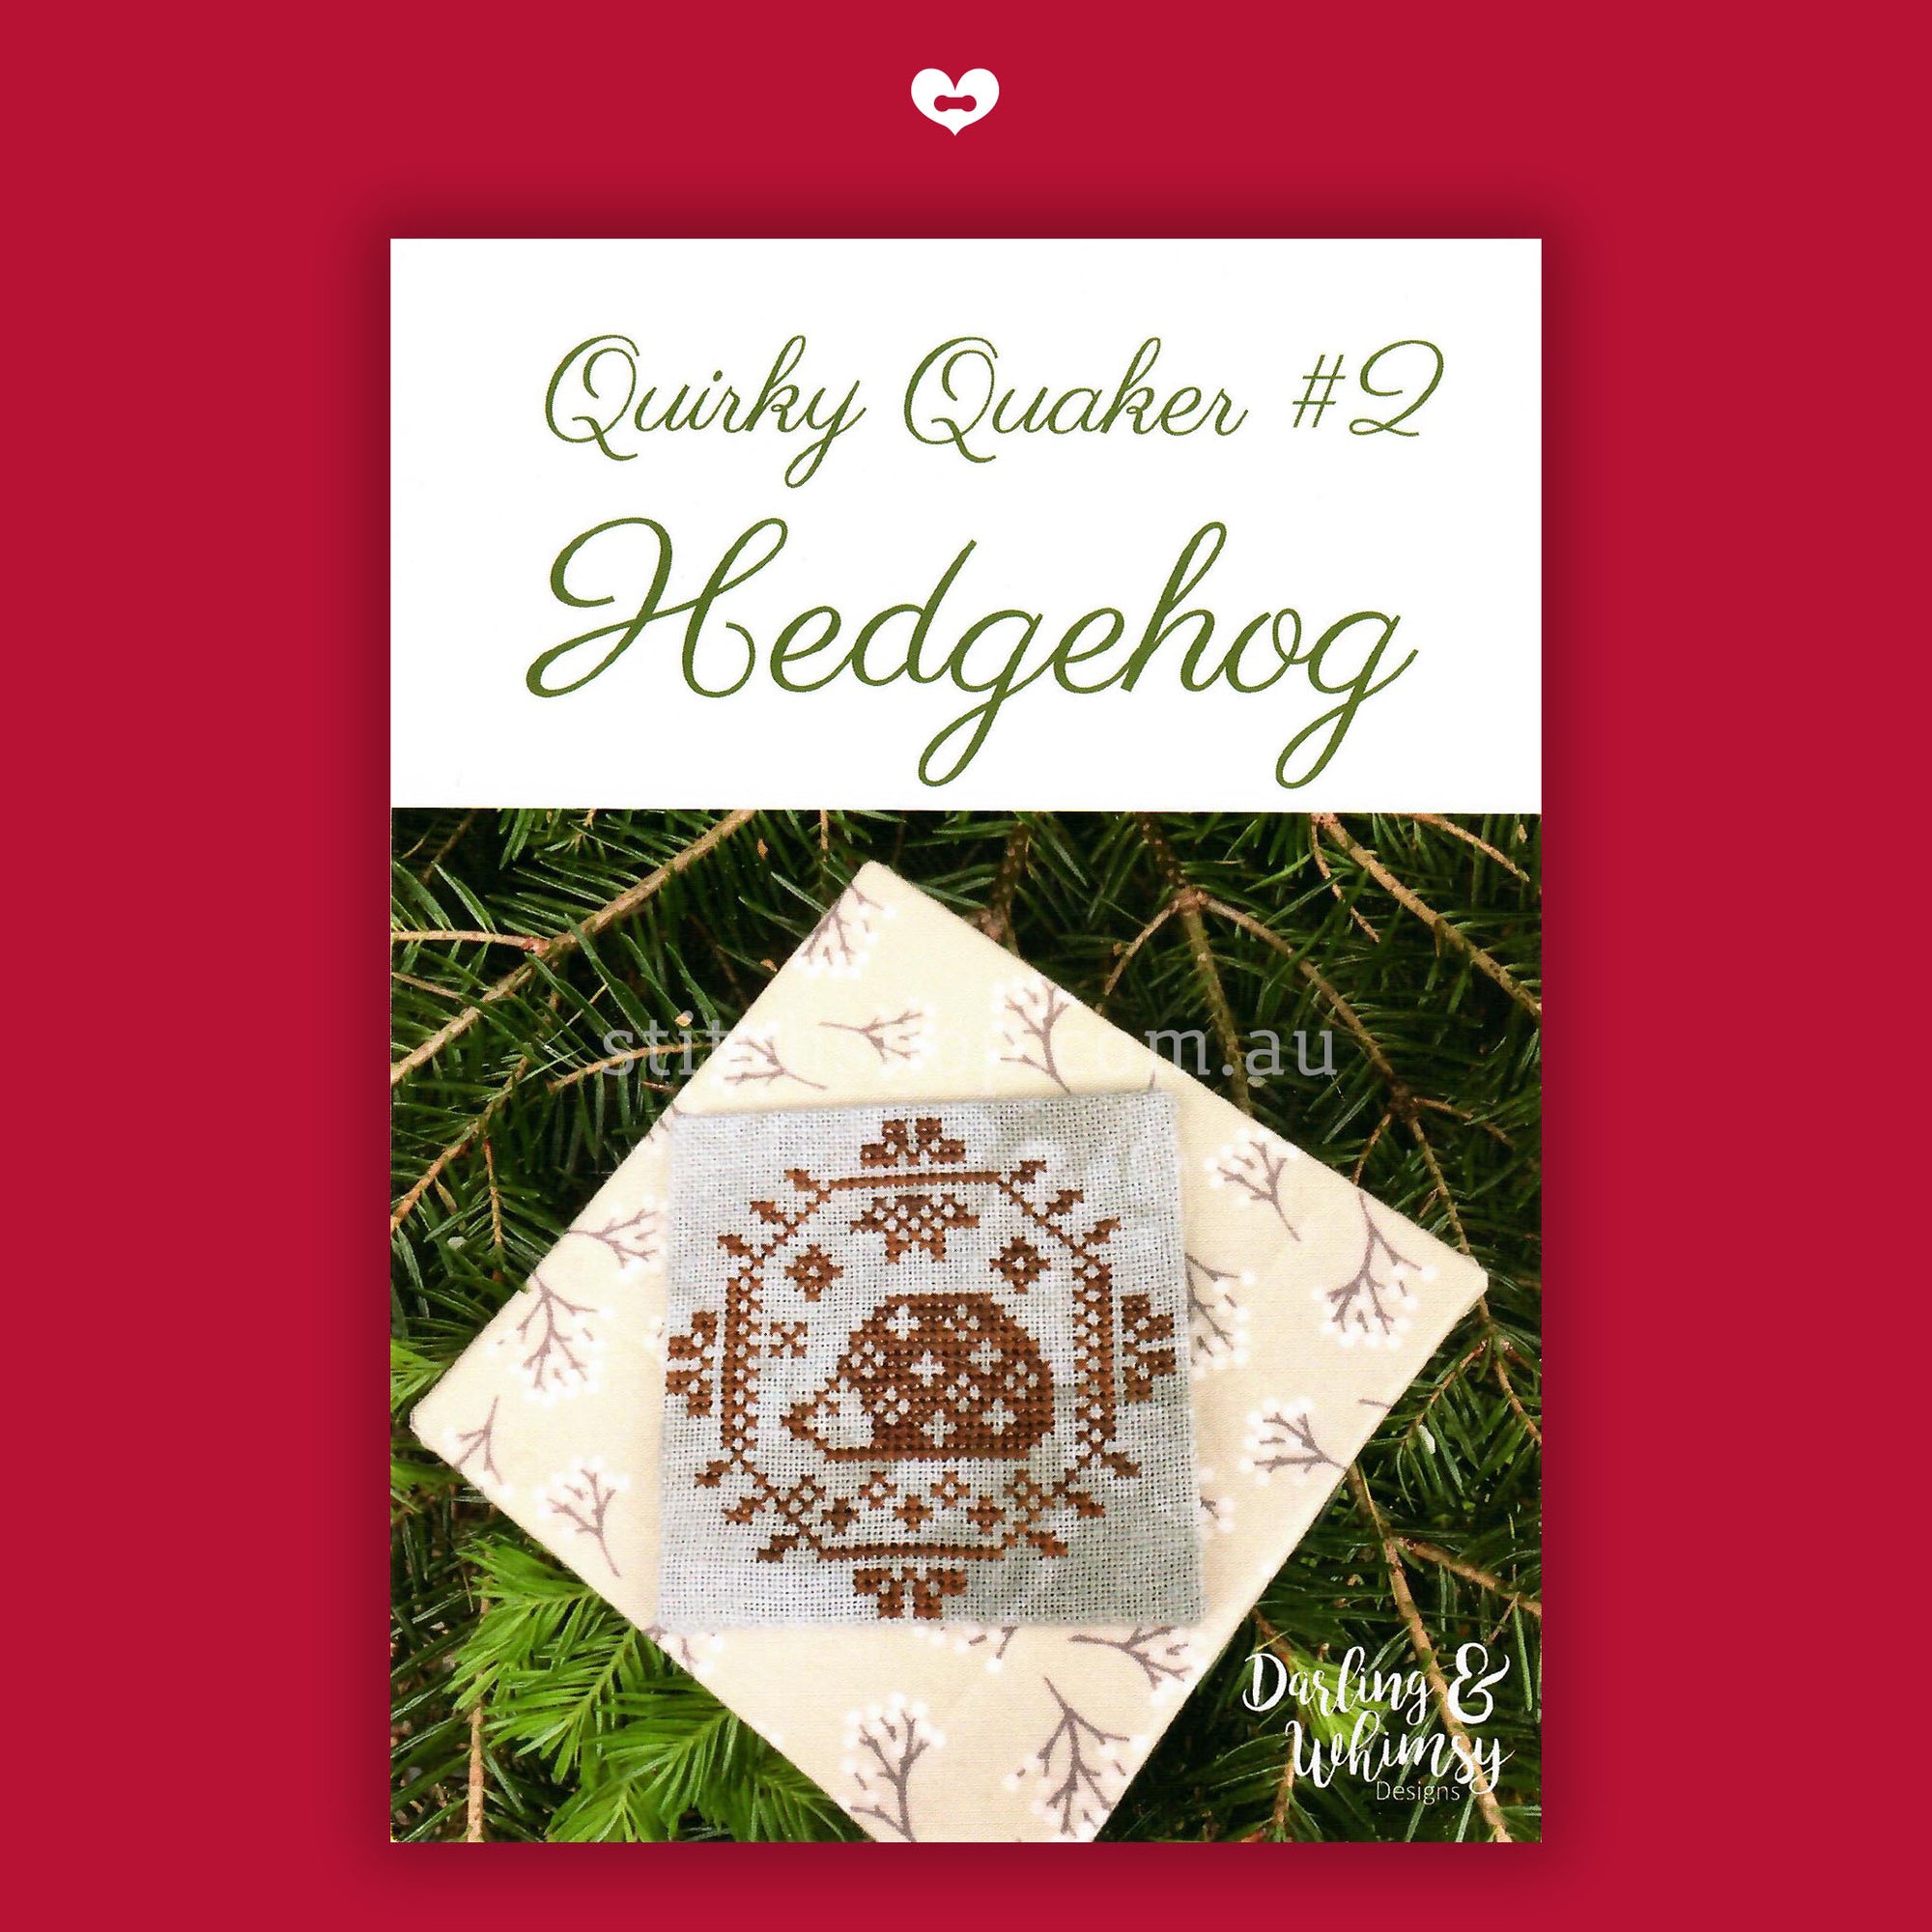 Quirky Quaker: Hedgehog